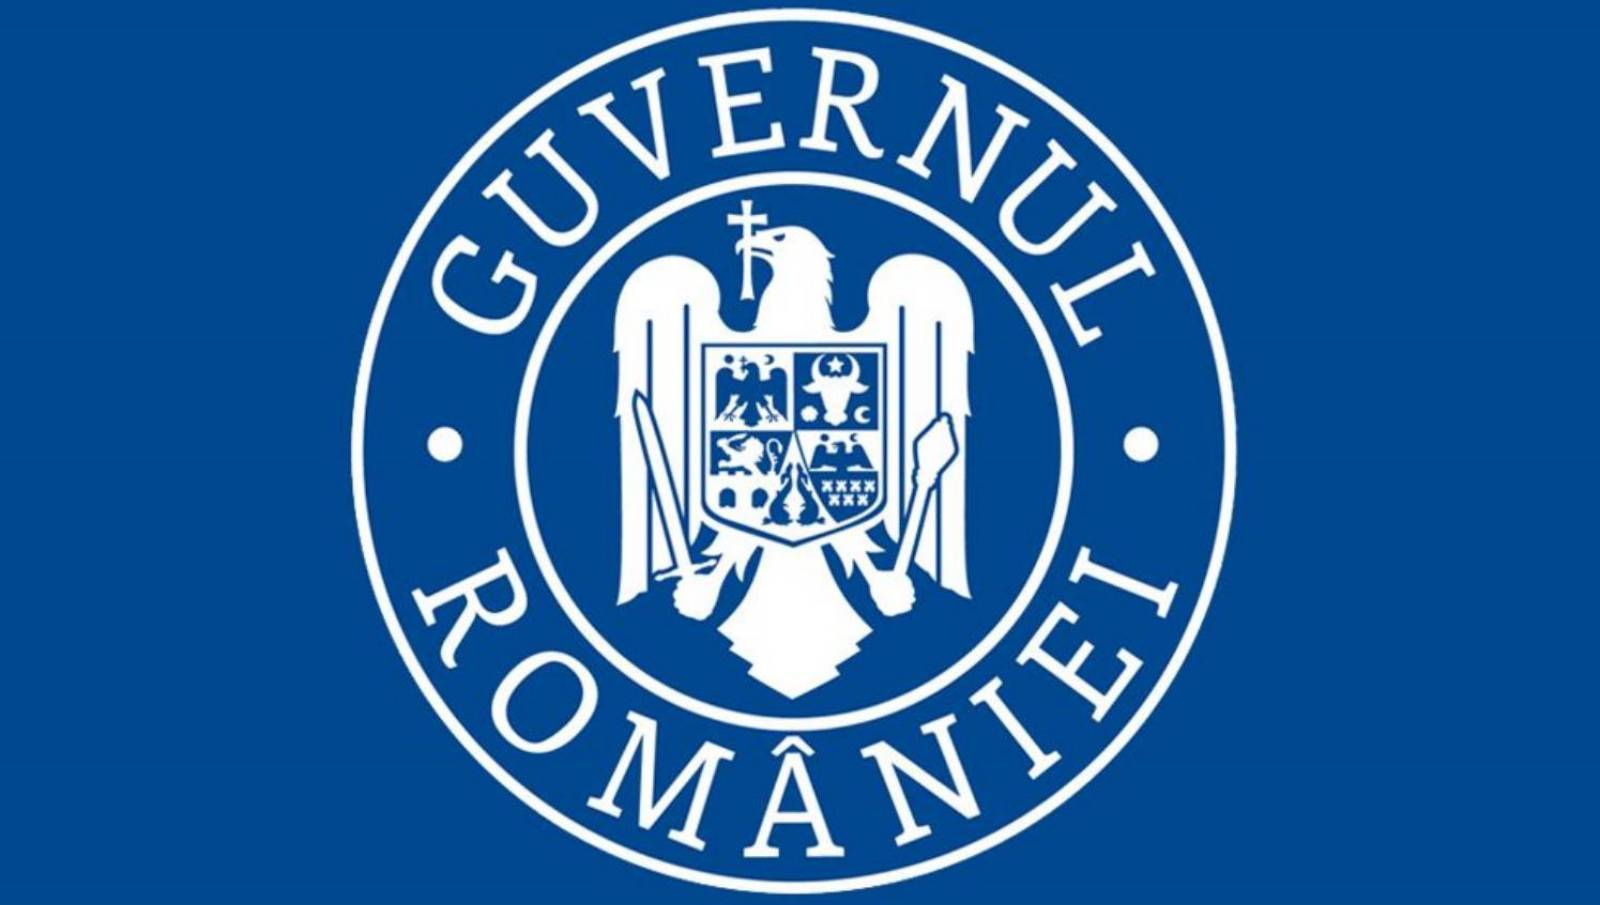 den rumänska regeringen begränsar ilfov